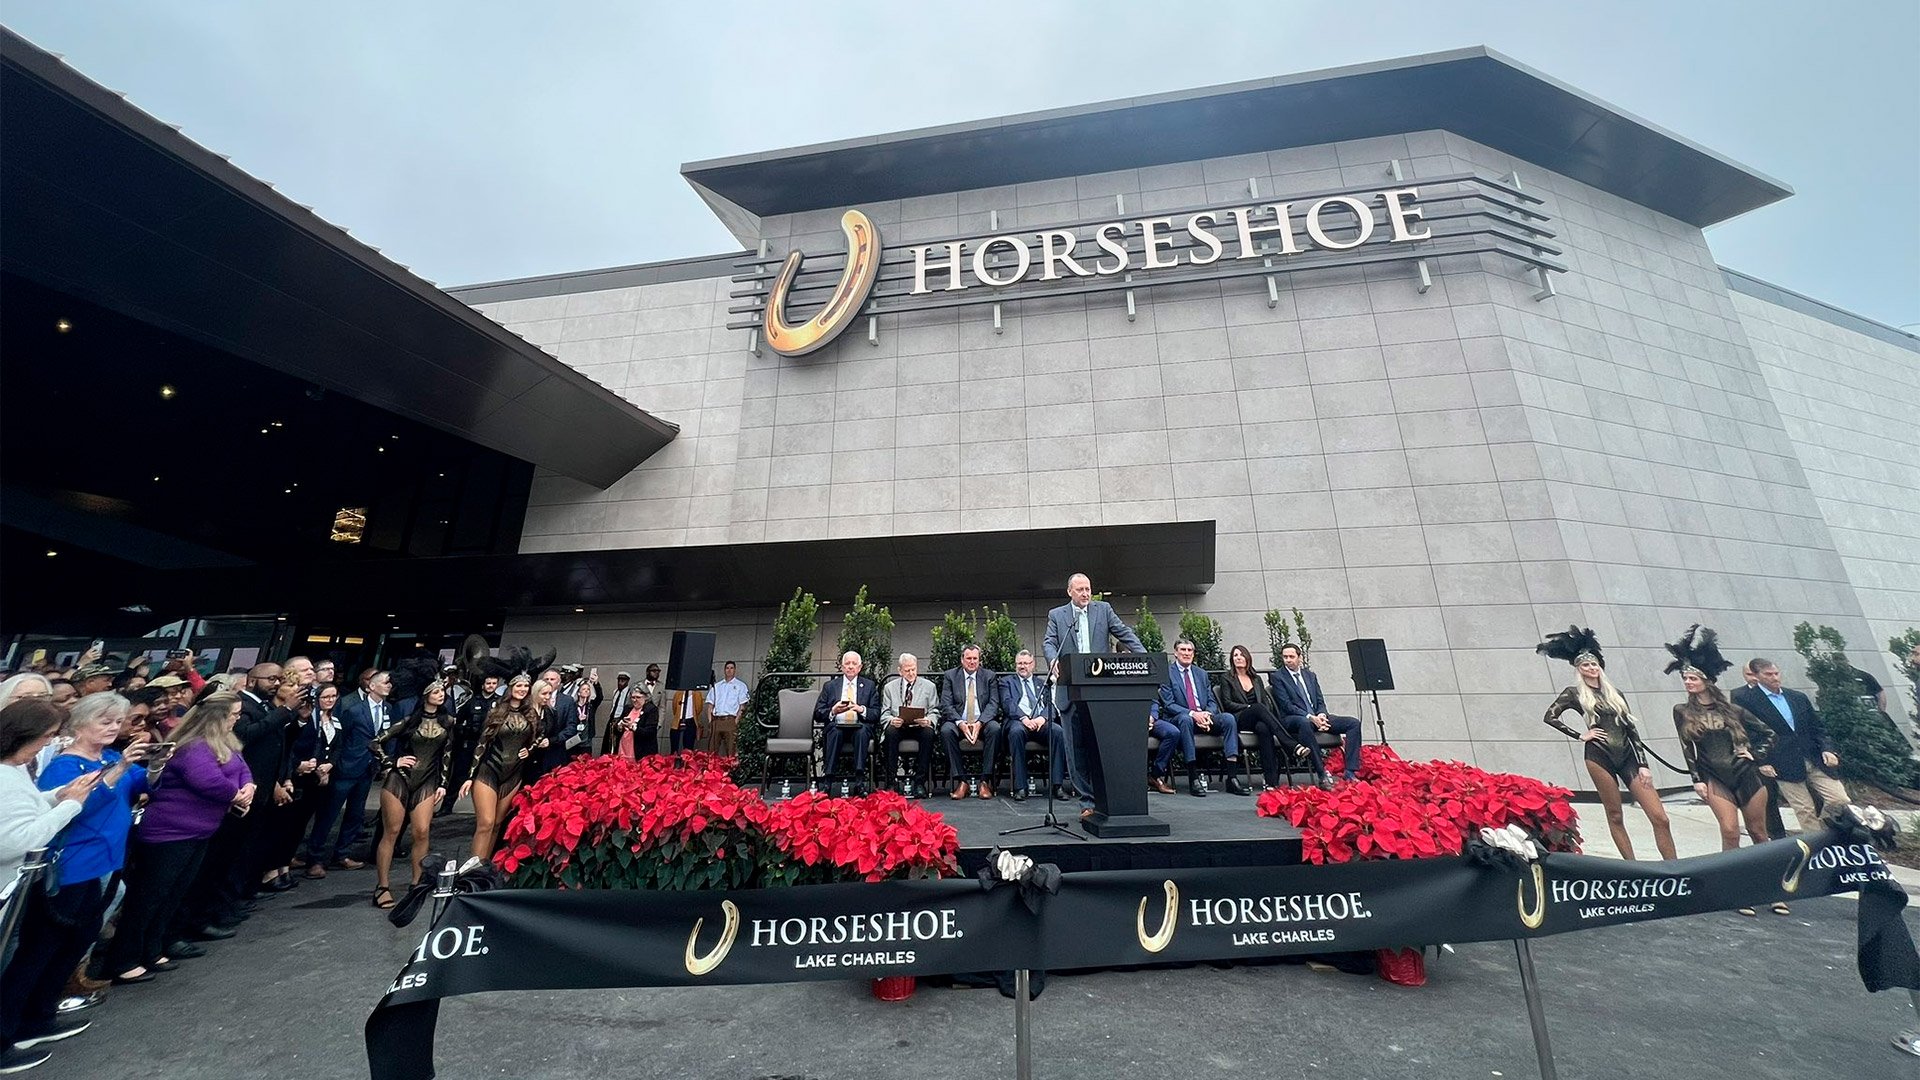 is horseshoe casino open on christmas day